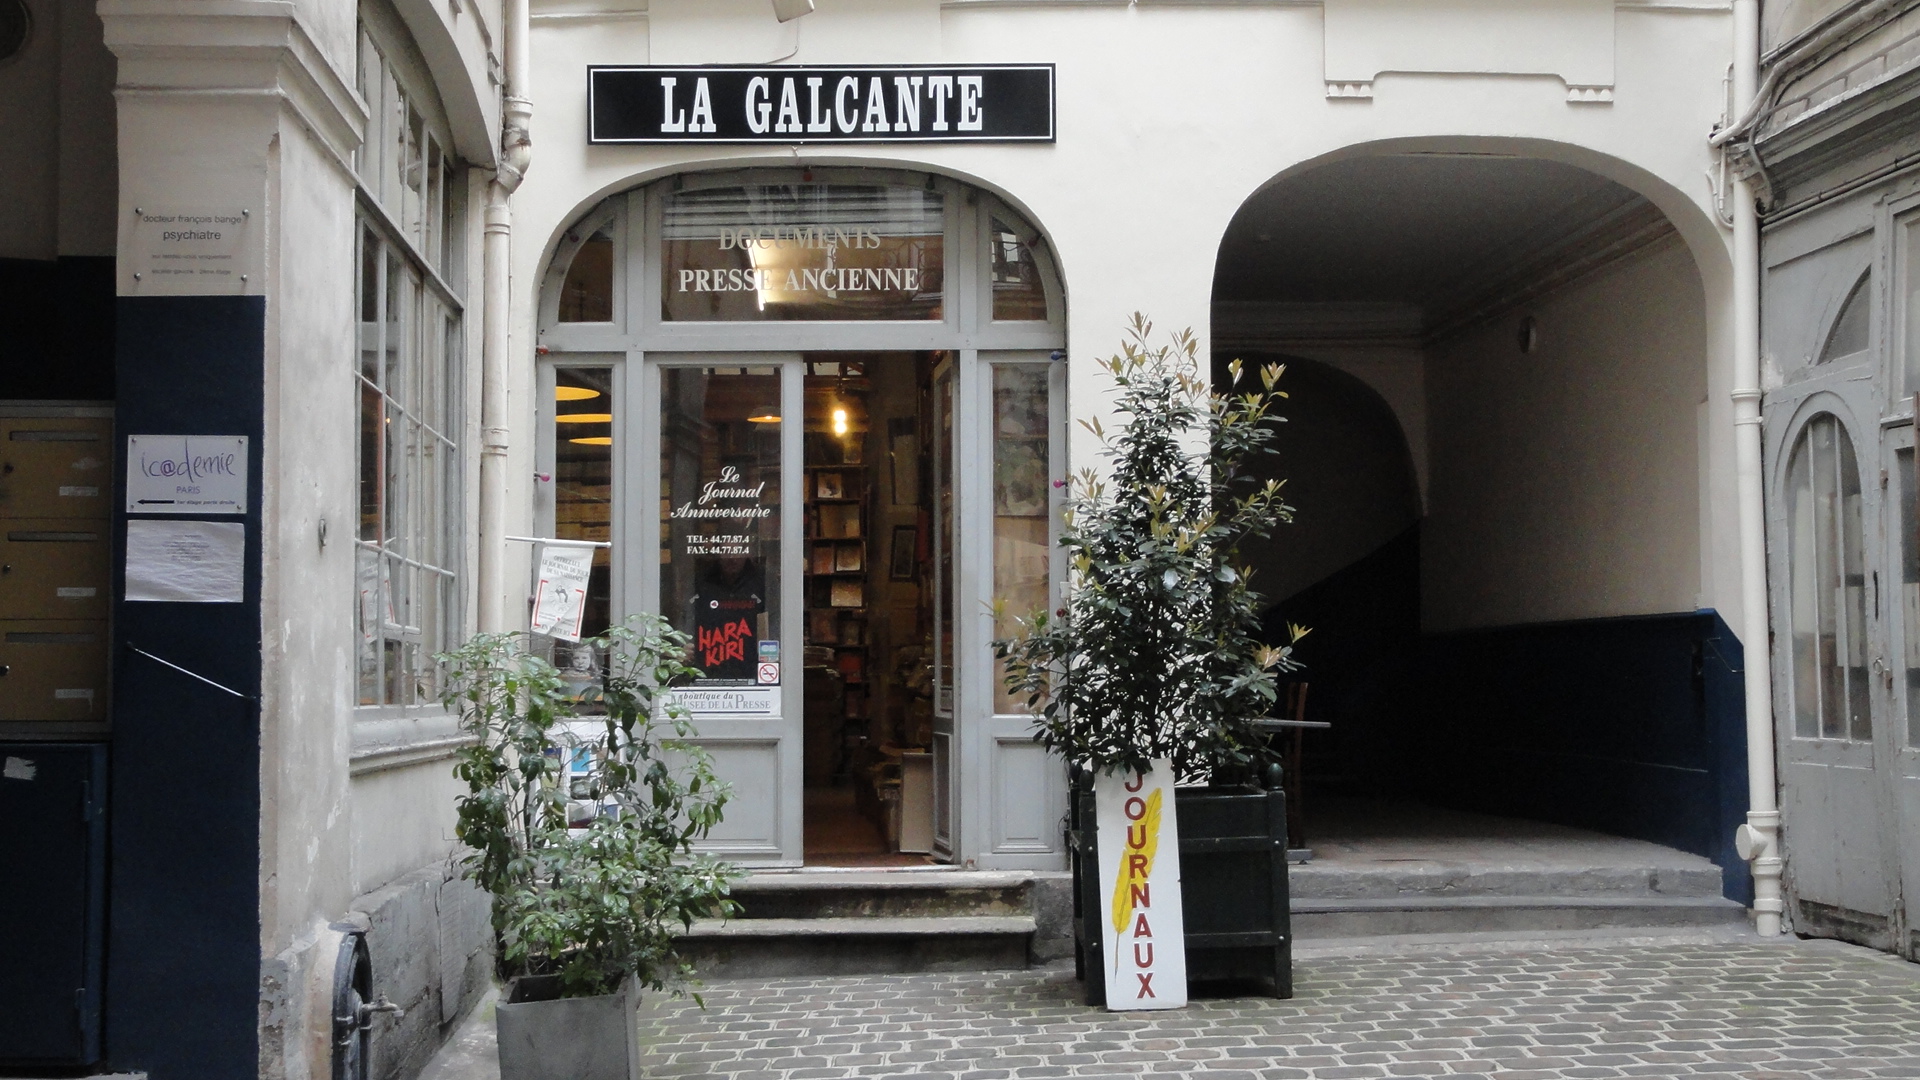 La Galcante - 52 rue de l'Arbre Sec, Paris 1er